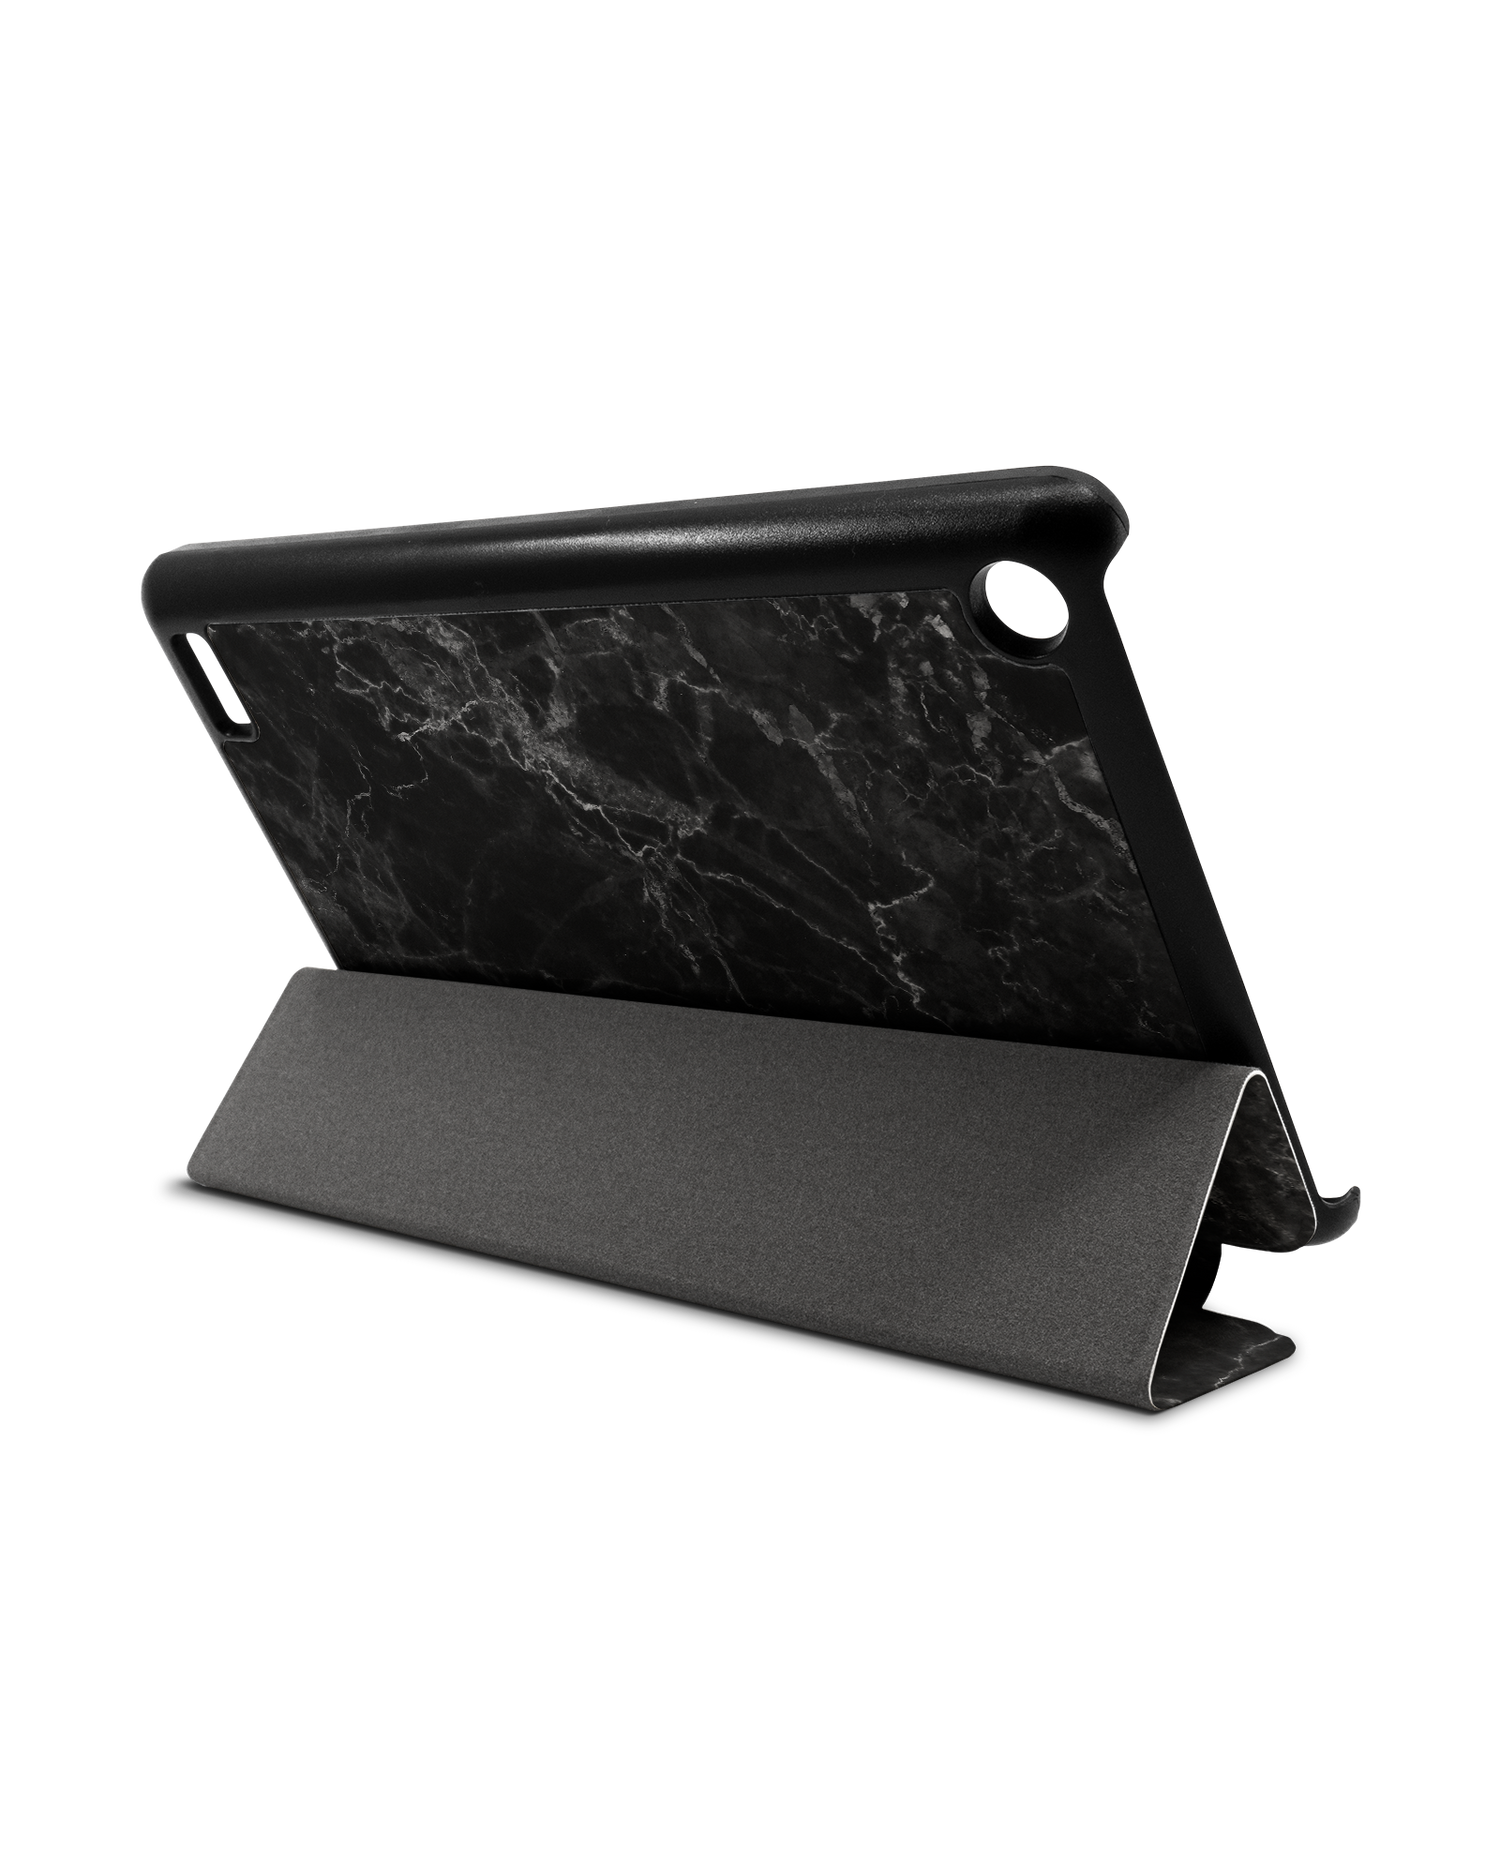 Midnight Marble Tablet Smart Case für Amazon Fire 7: Aufgestellt im Querformat